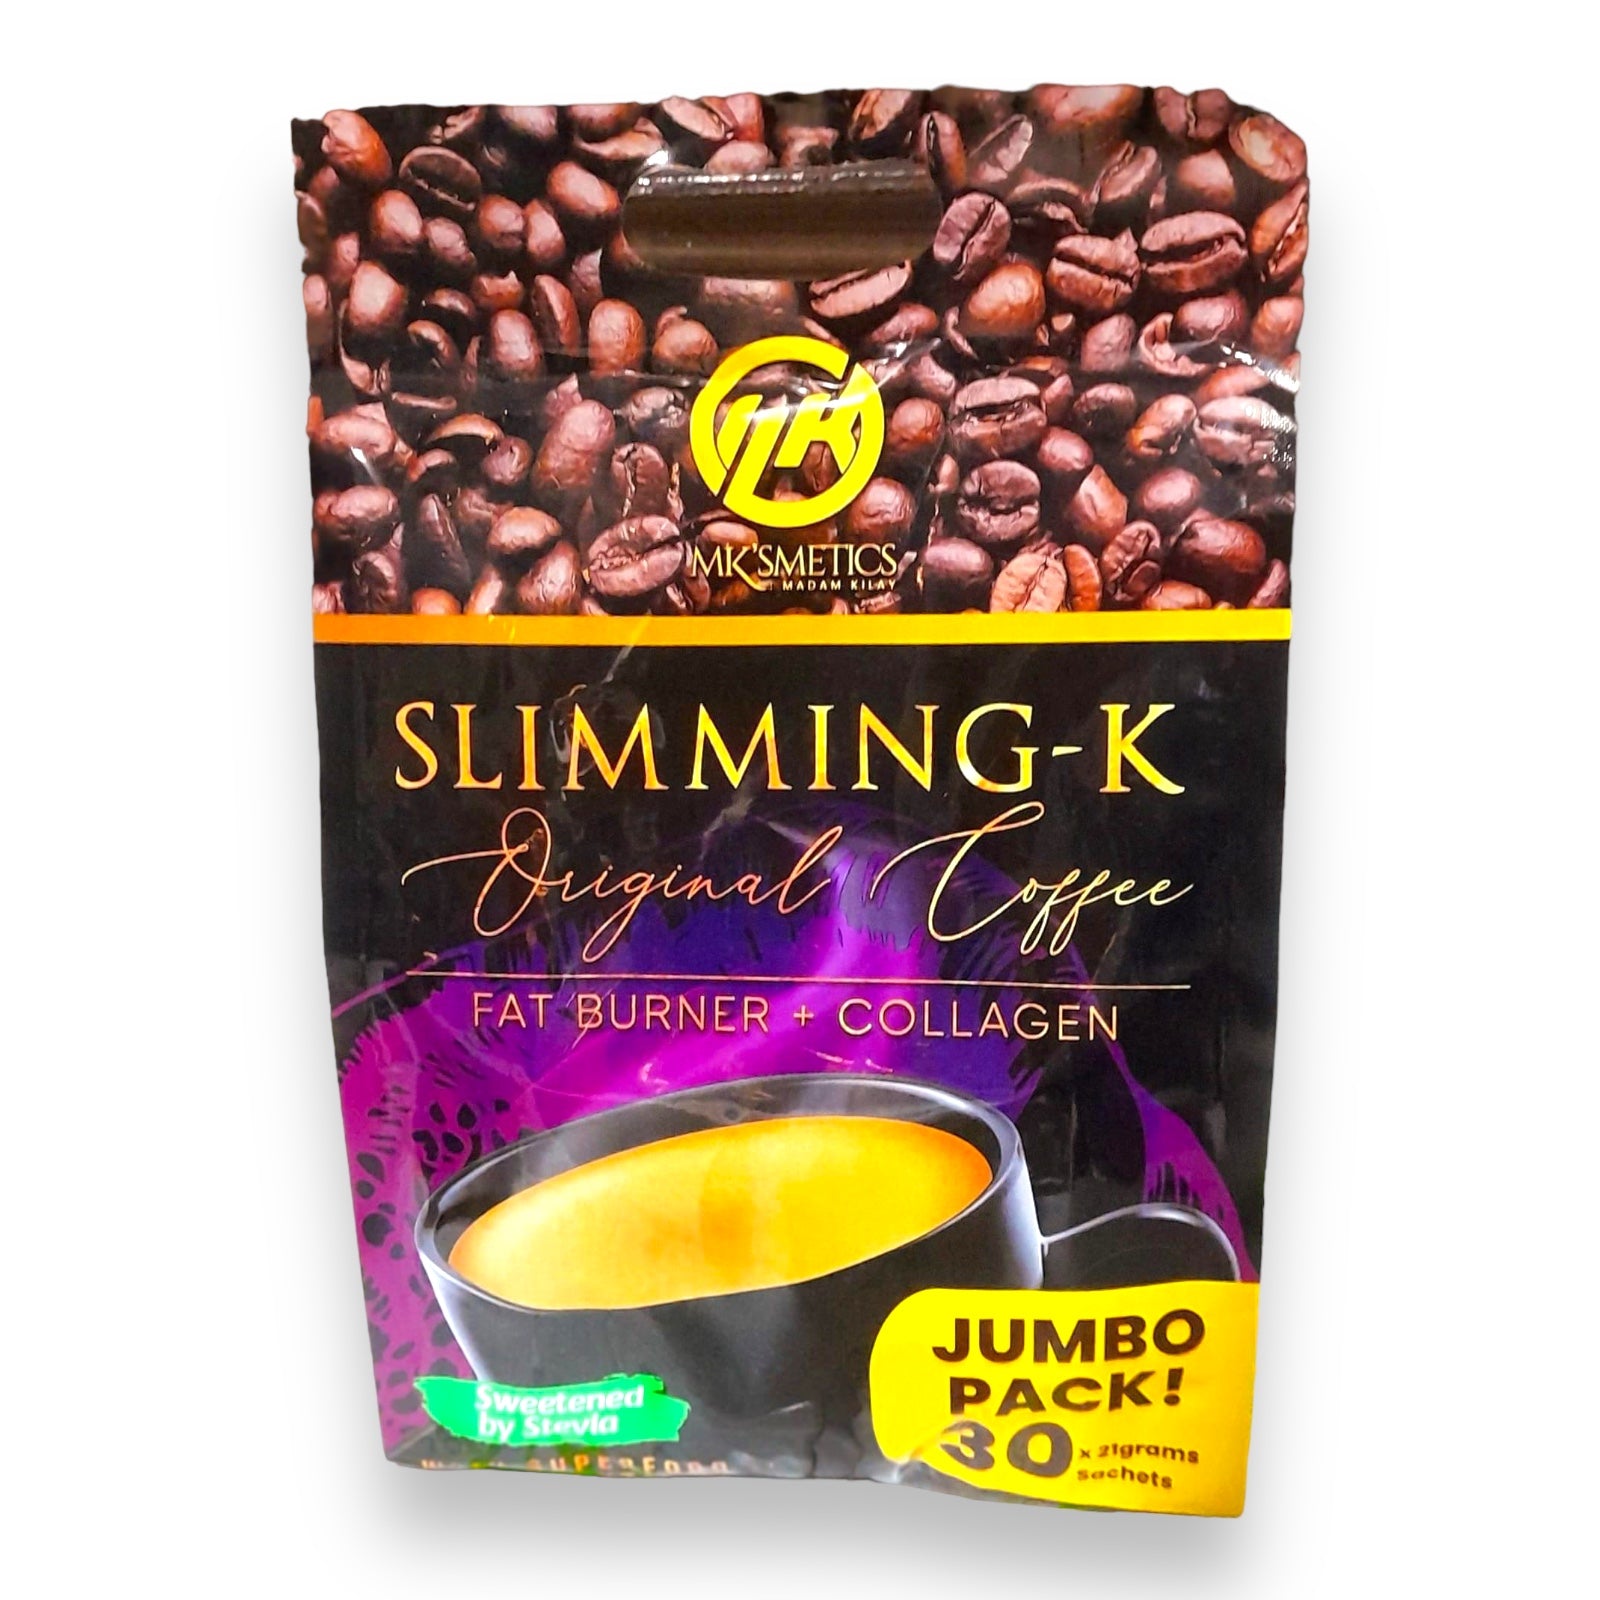 MK’smeticks - Slimming K - Original Coffee - JUMBO PACK 30 sachet loop